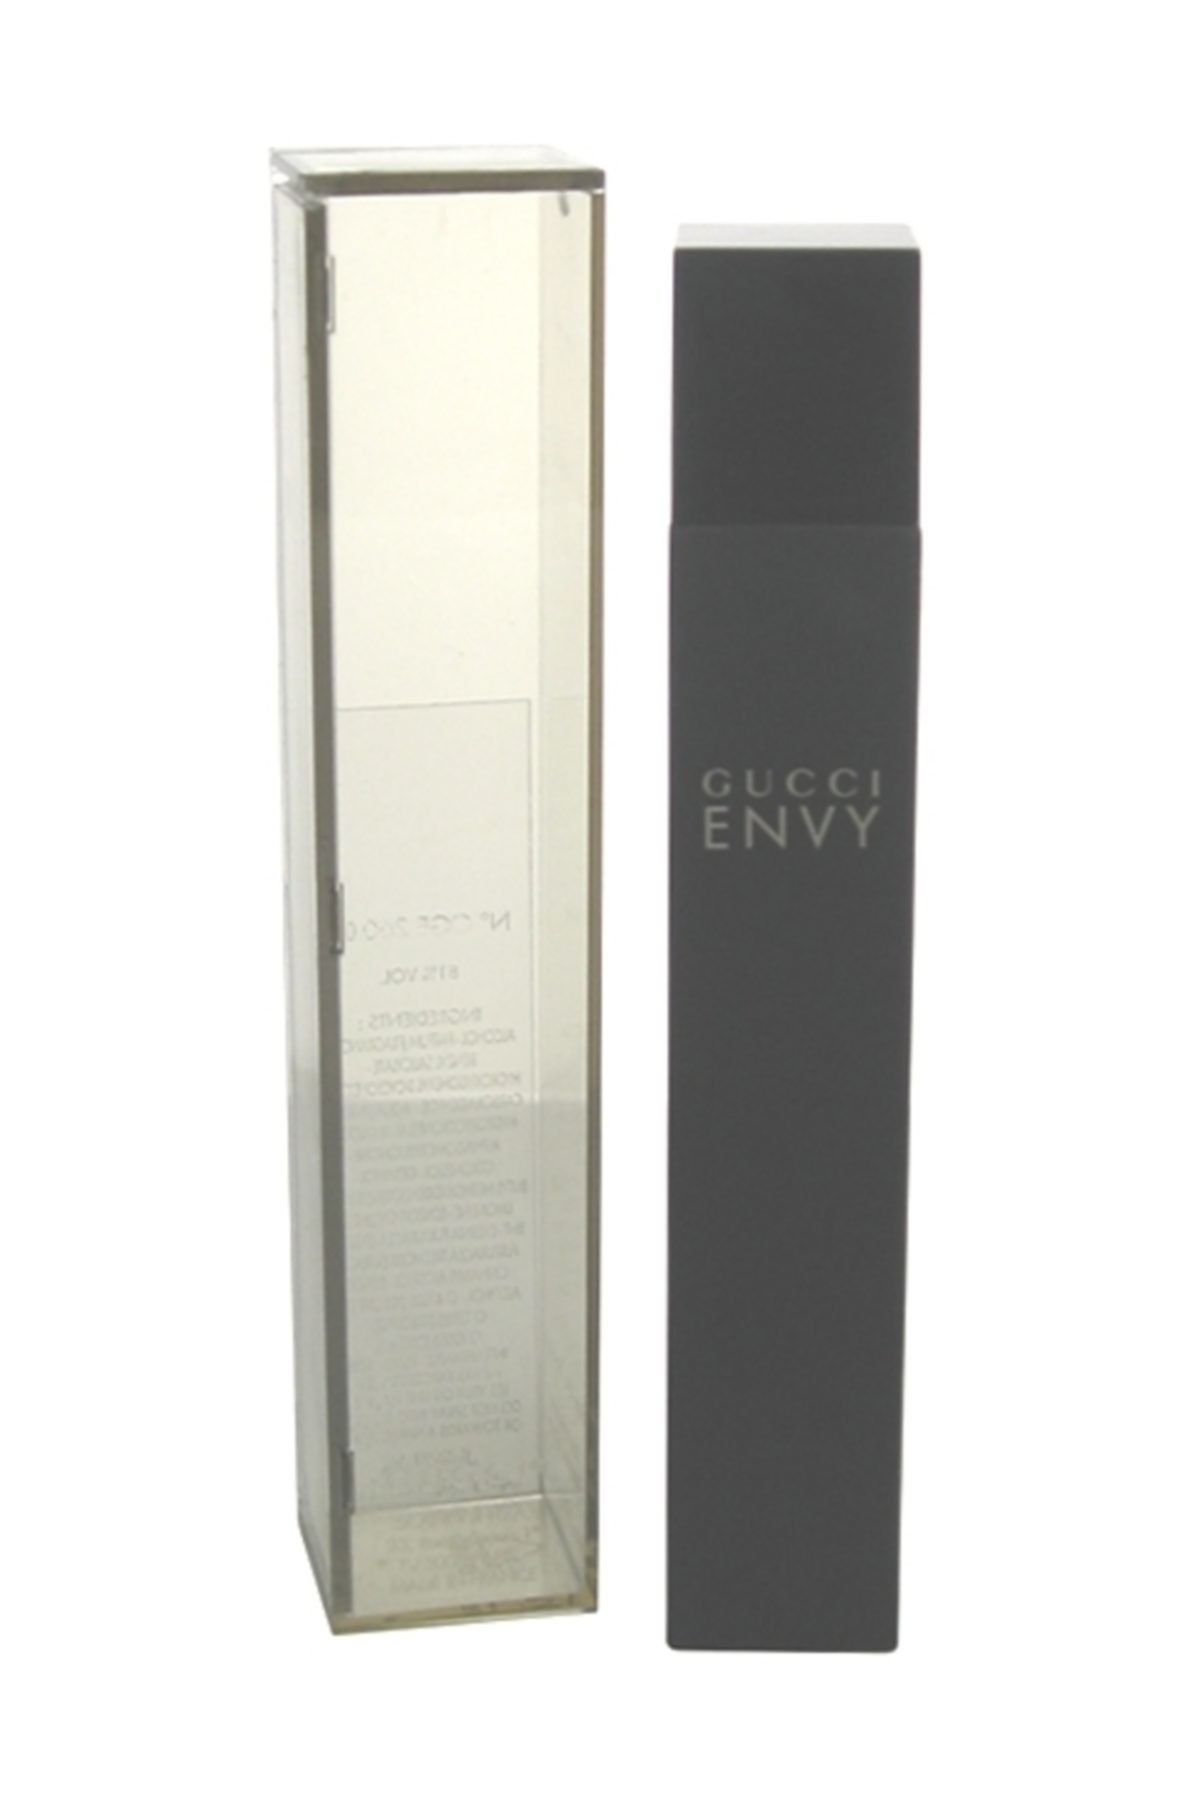 Gucci Envy Edp 100 ml Kadın Parfüm 766124013400